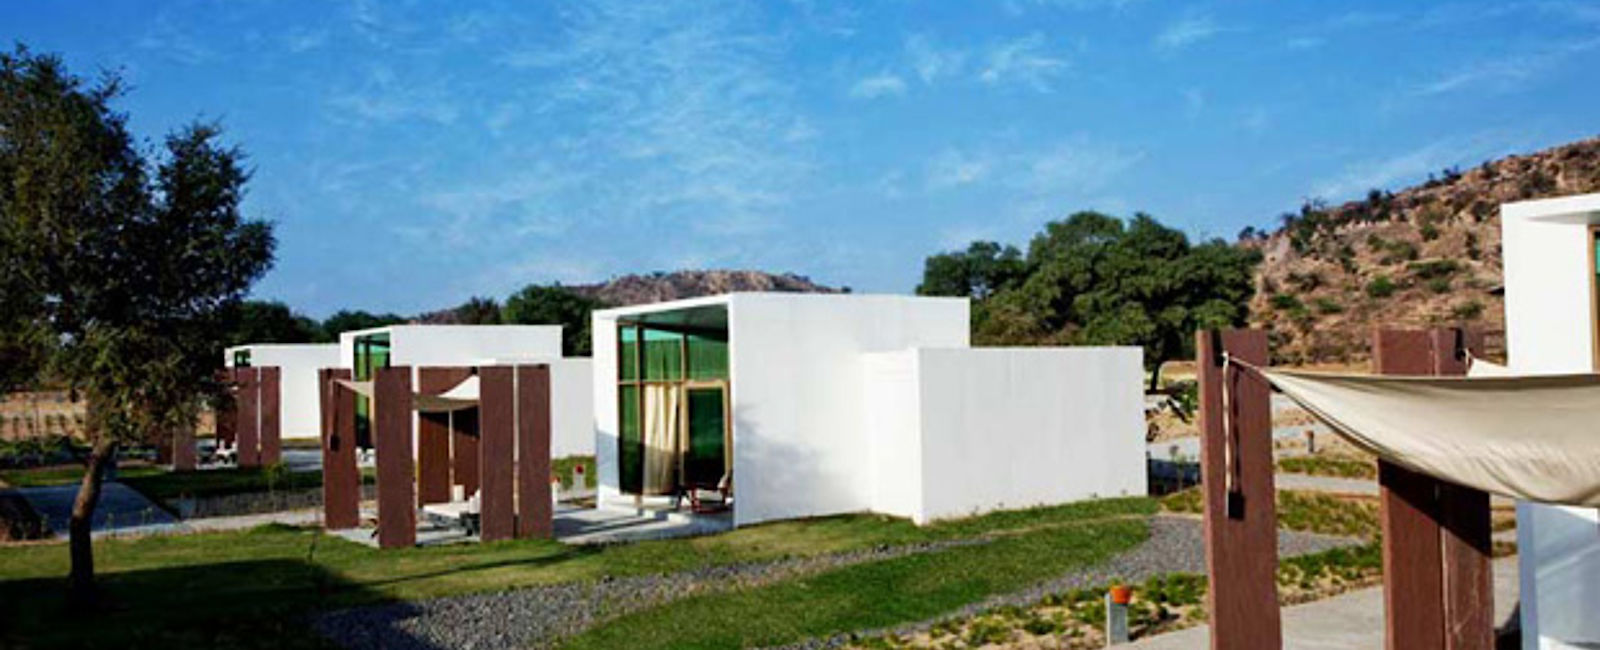 HOTEL TIPPS
 lebua Lodge at Amer 
 Luxus Resort im futuristischen Design 